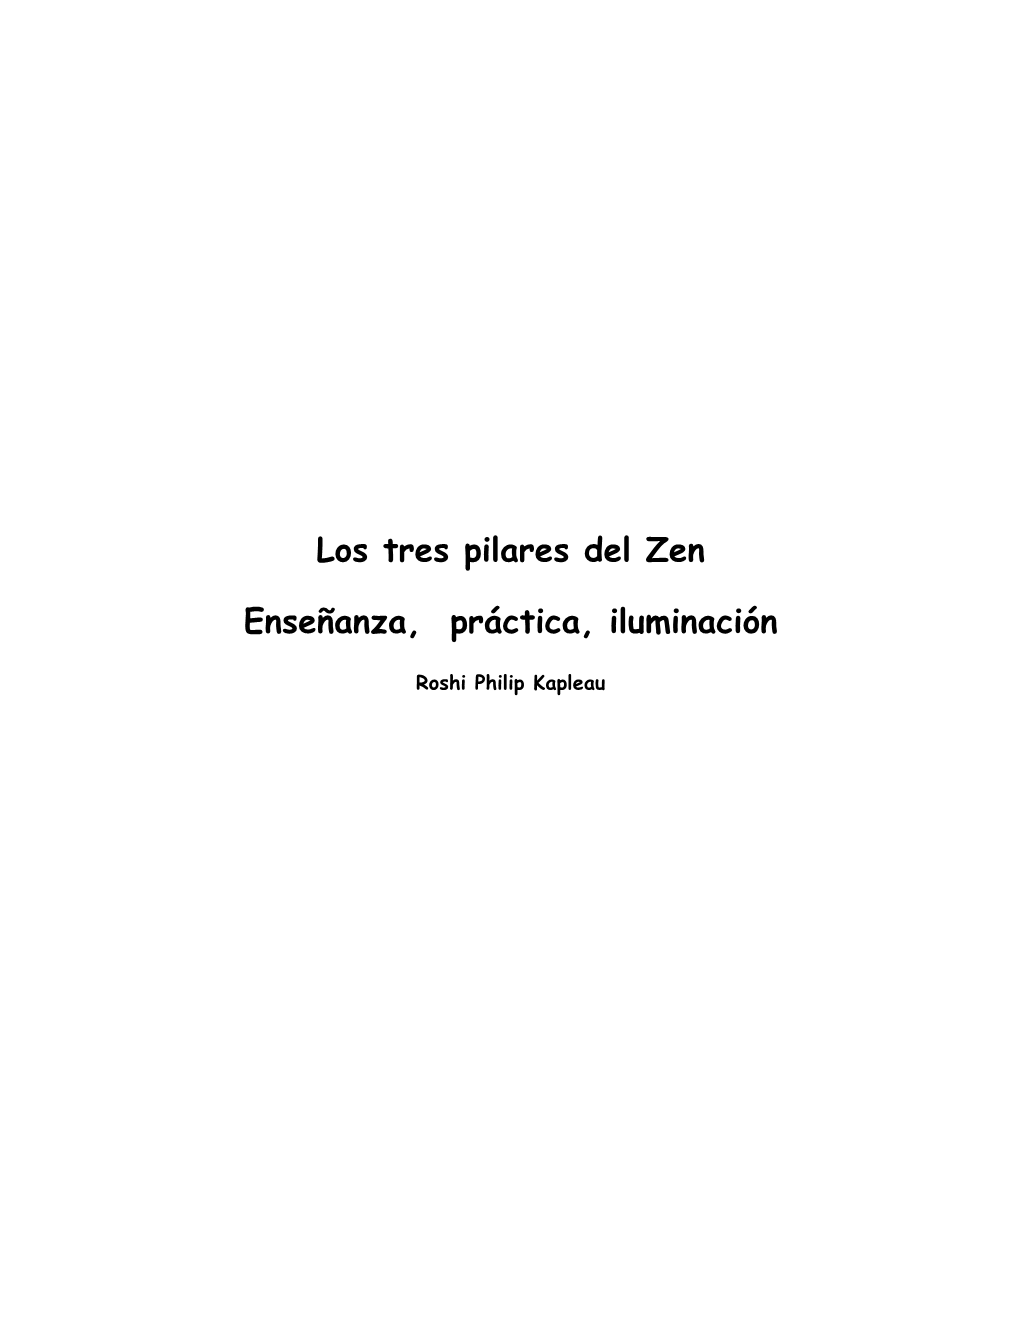 Los Tres Pilares Del Zen Enseñanza, Práctica, Iluminación